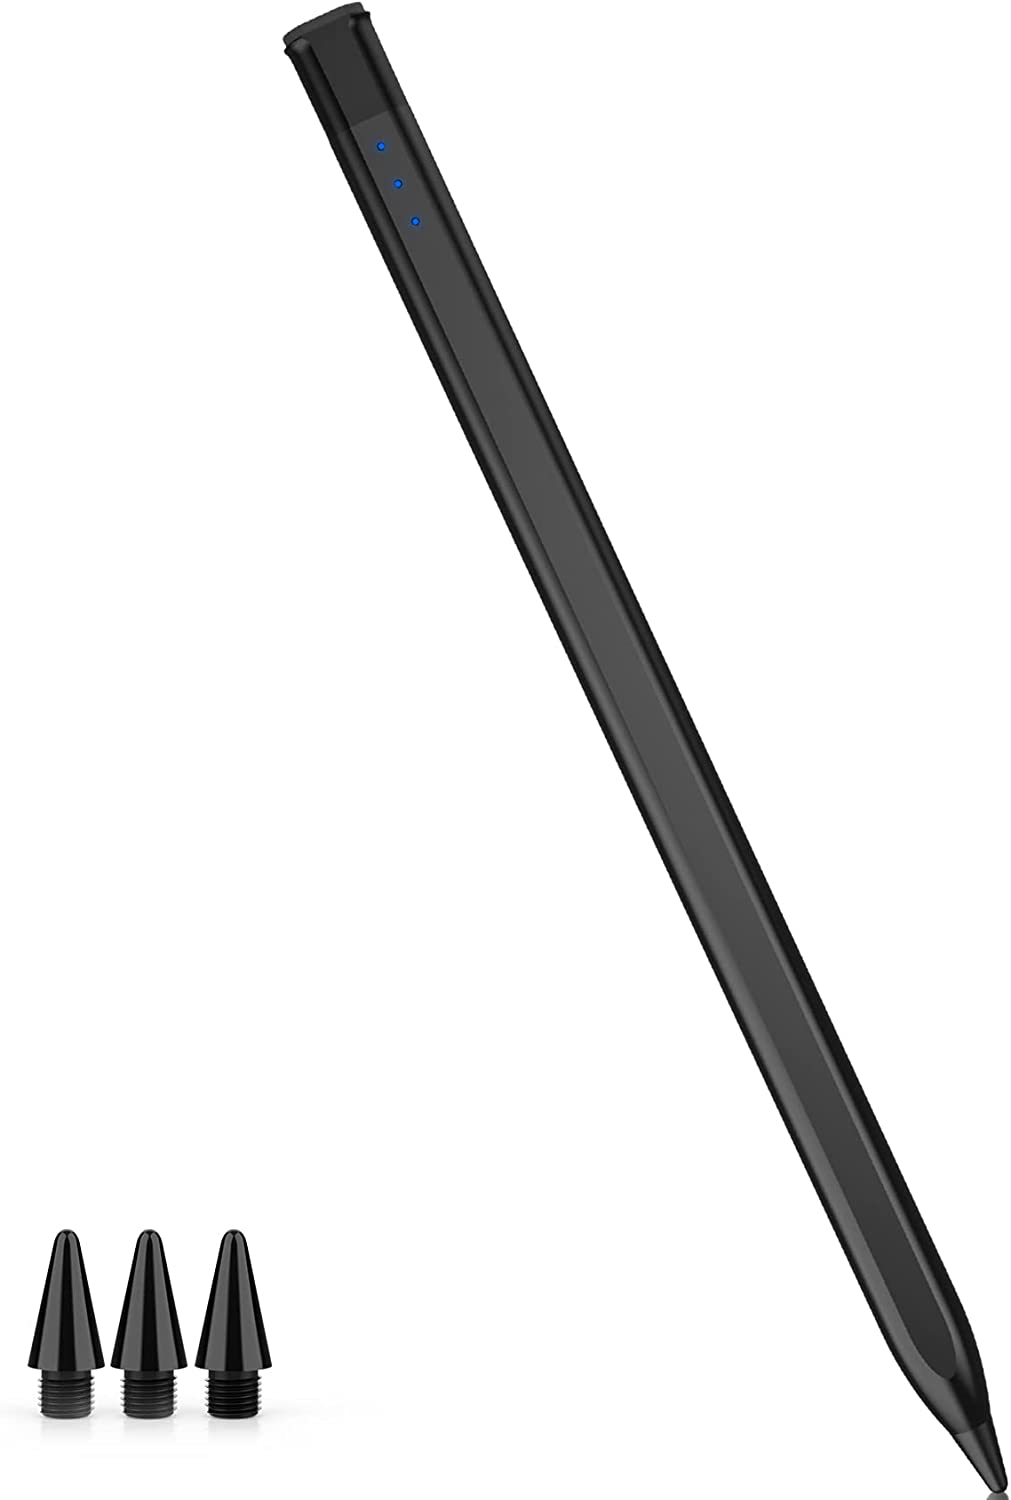 タッチペン スタイラスペン iPhone iPad Android スマホ タブレット ペンシル 極細 高精度 ipad ペン バッテリー残量表示 磁気吸着機能搭載 Type-C充電式 交換用ペン先3枚付き ブラック